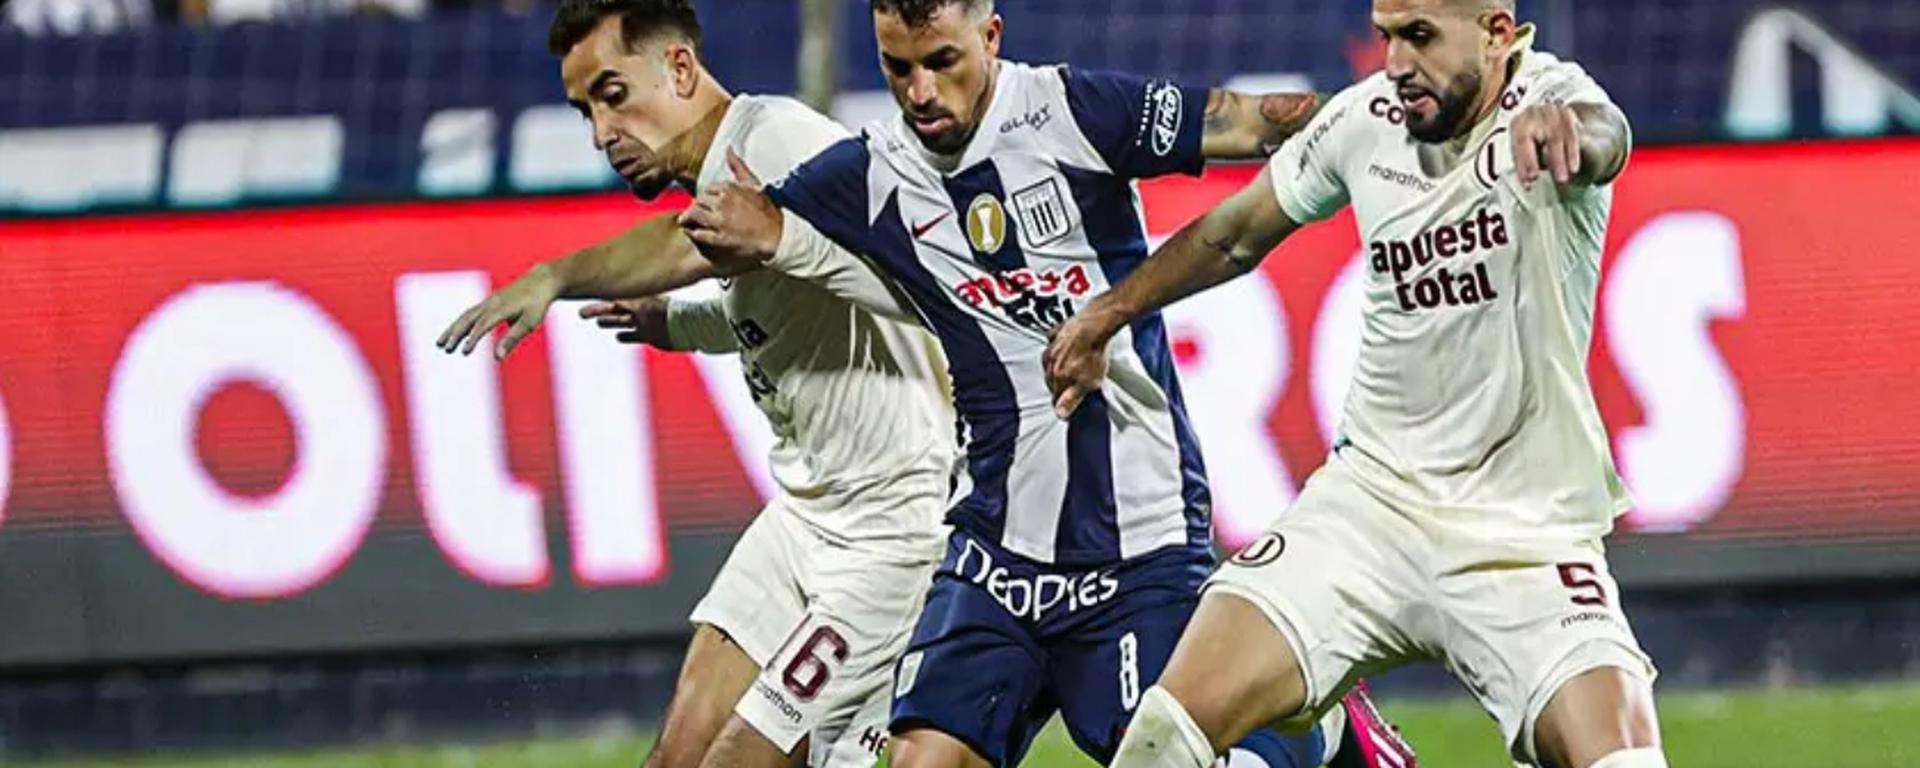 Liga 1 Te Apuesto: así han cambiado los auspicios deportivos en el fútbol peruano ¿cómo se han revalorizado?